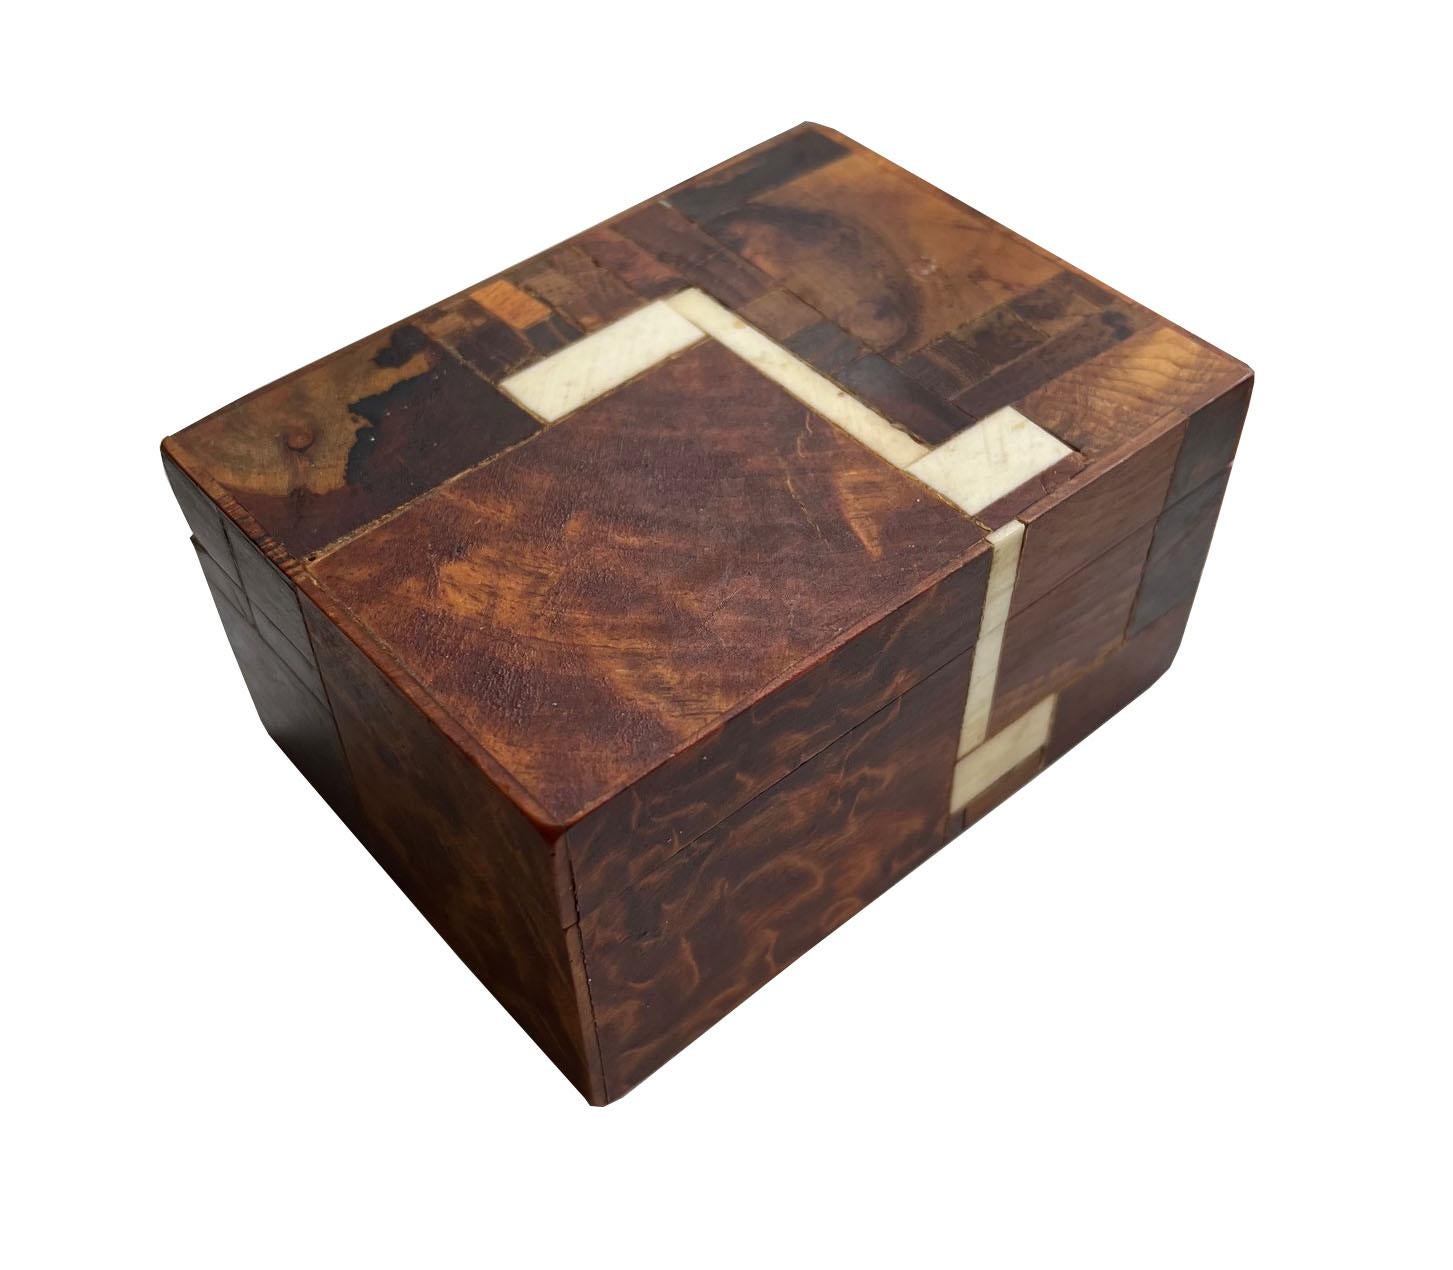 Brumm Handcrafted Wood Boîte en bois avec intérieur en velours.

Cette magnifique boîte décorative en bois marqueté faite à la main par l'artiste Norman Brumm (1939 - 2008) est une œuvre d'art complexe. Elle est composée de morceaux de bois de